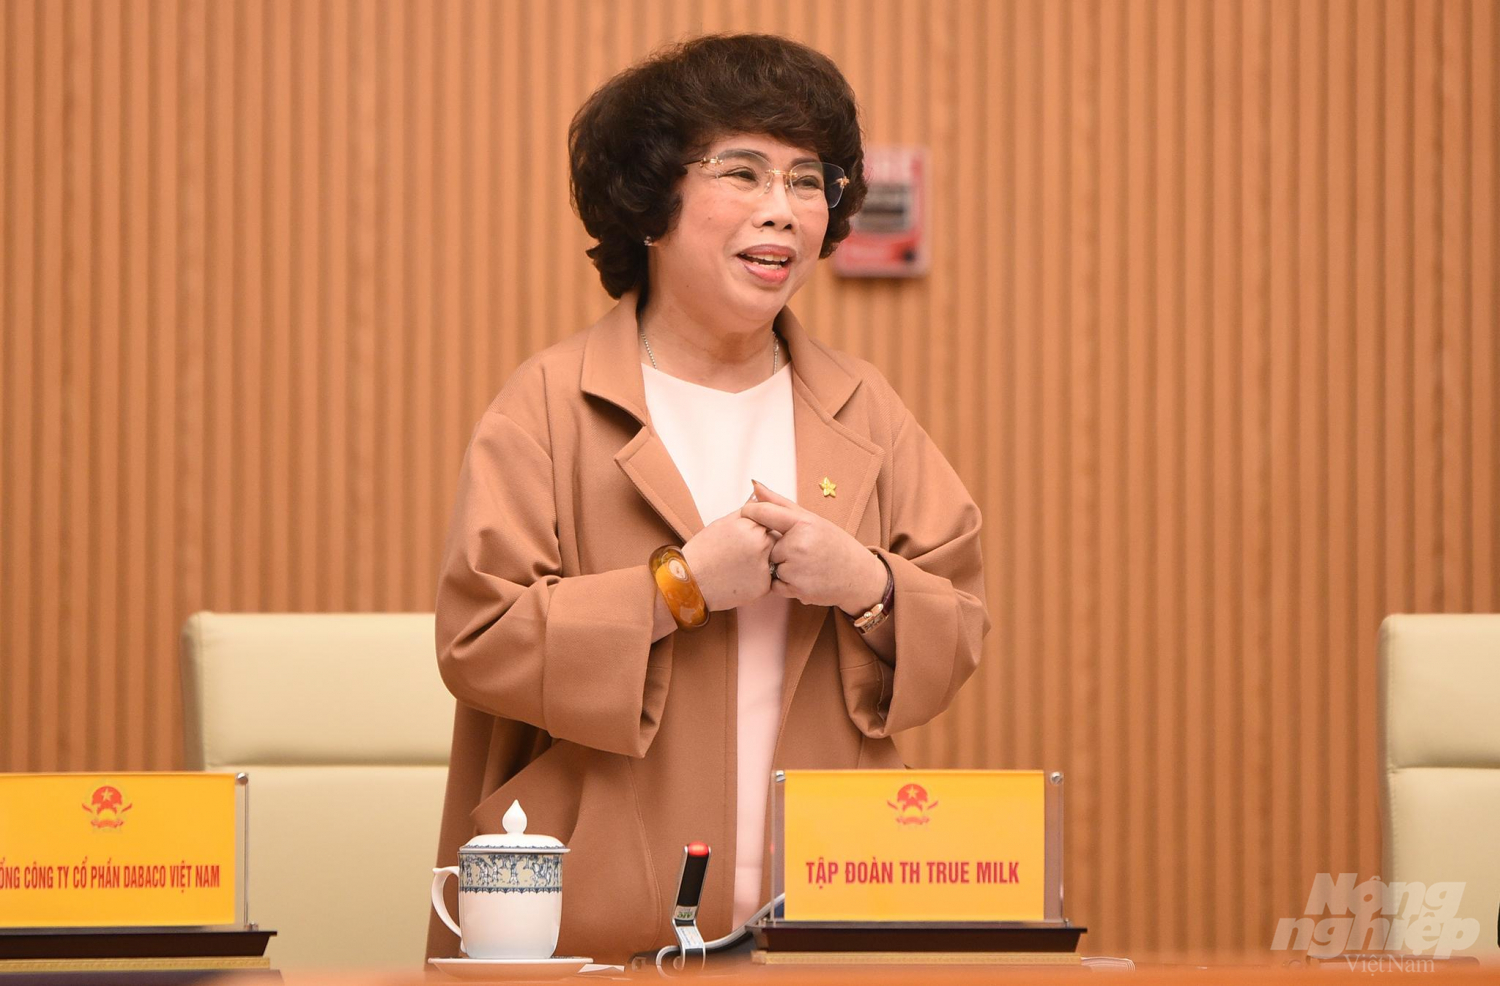 Bà Thái Hương mong muốn các doanh nghiệp hãy xây dựng tinh thần văn hóa doanh nhân. Ảnh: Tùng Đinh.